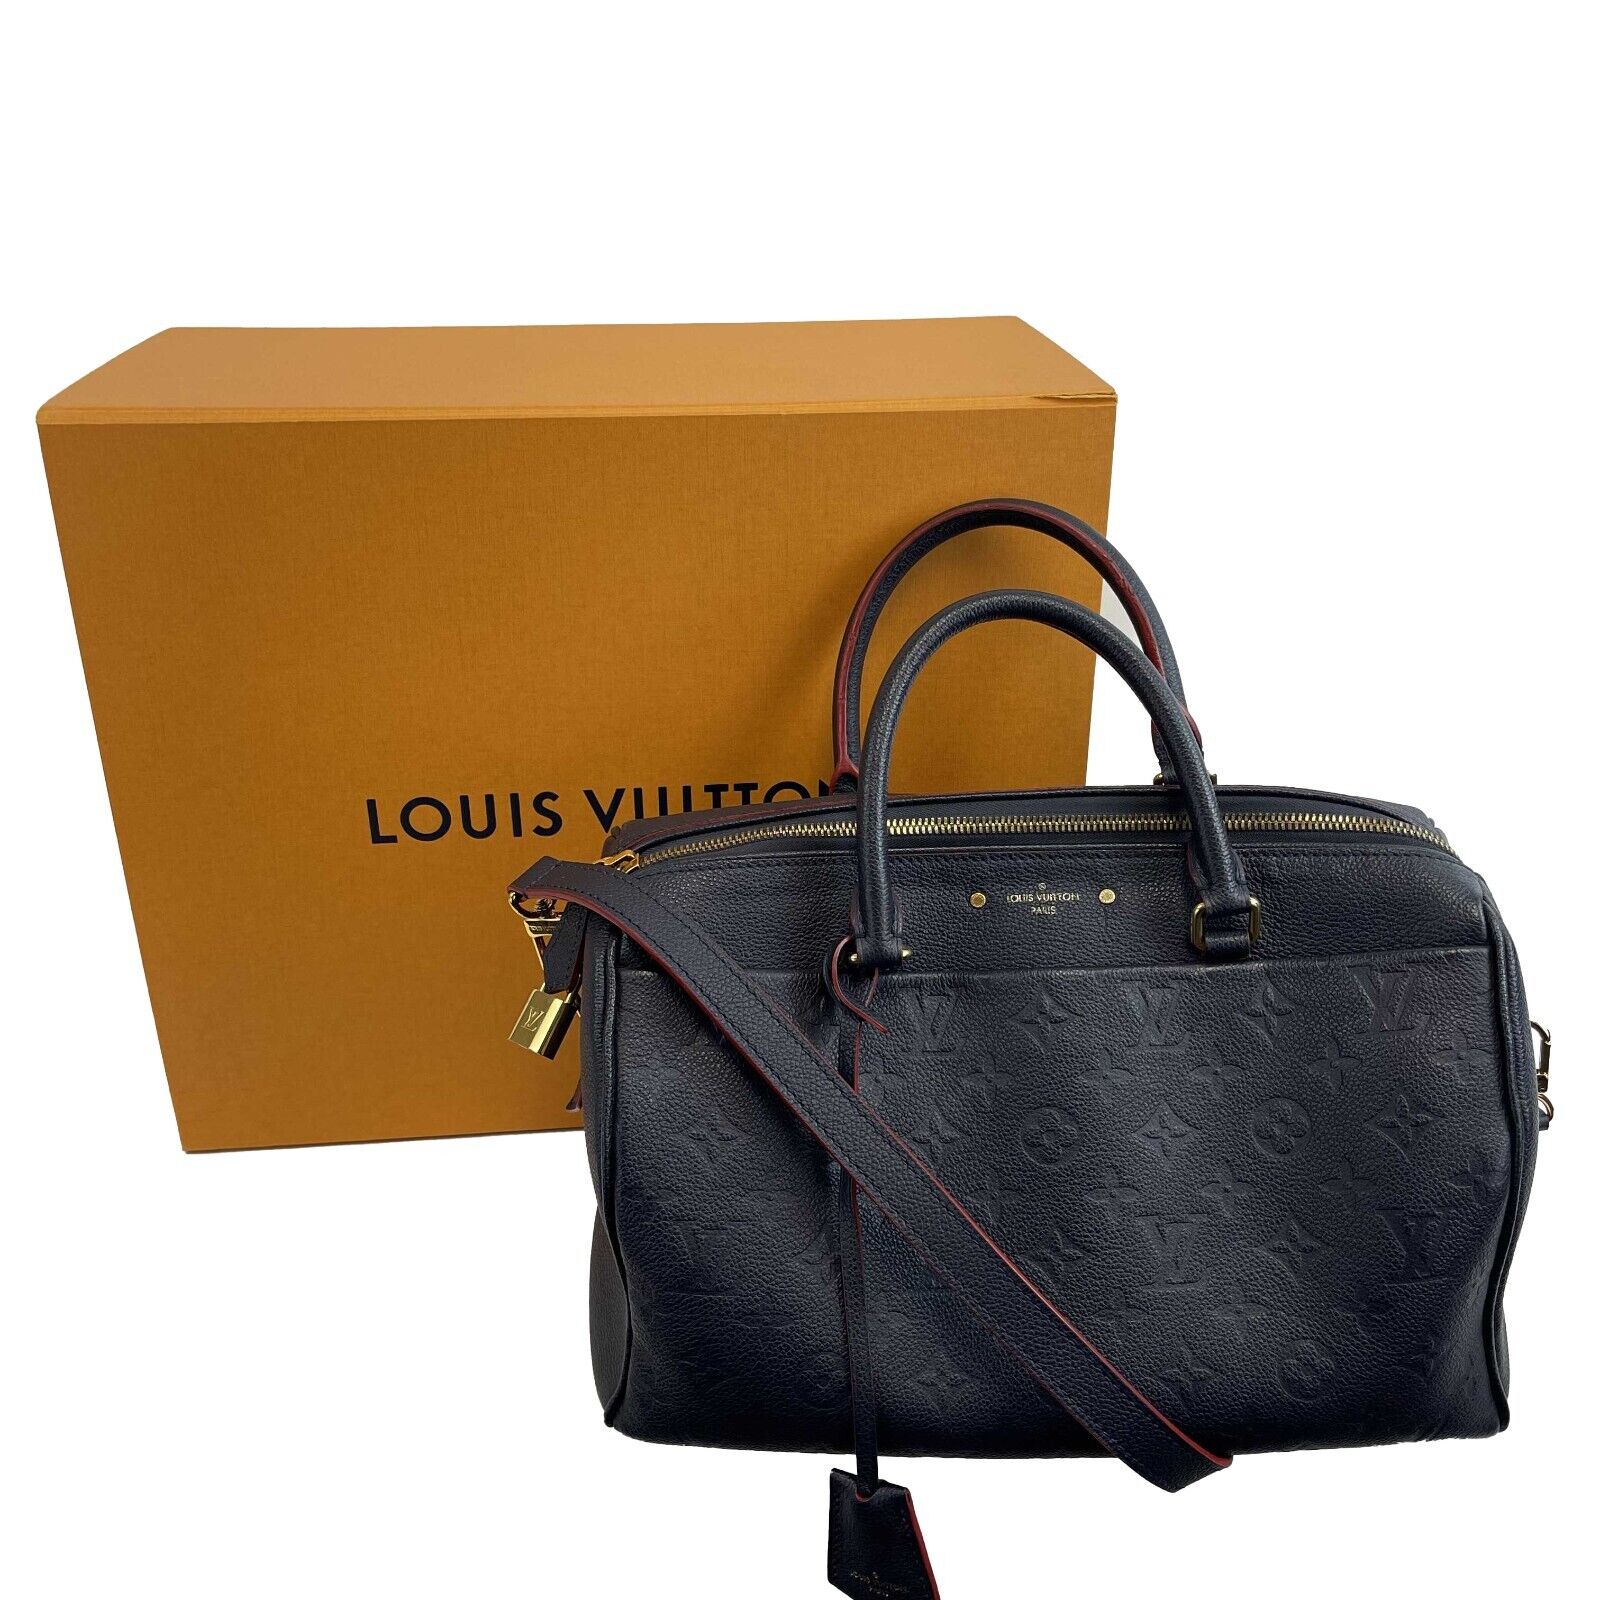 Louis Vuitton Monogram Empreinte Speedy Bandouliere 30 Satchel